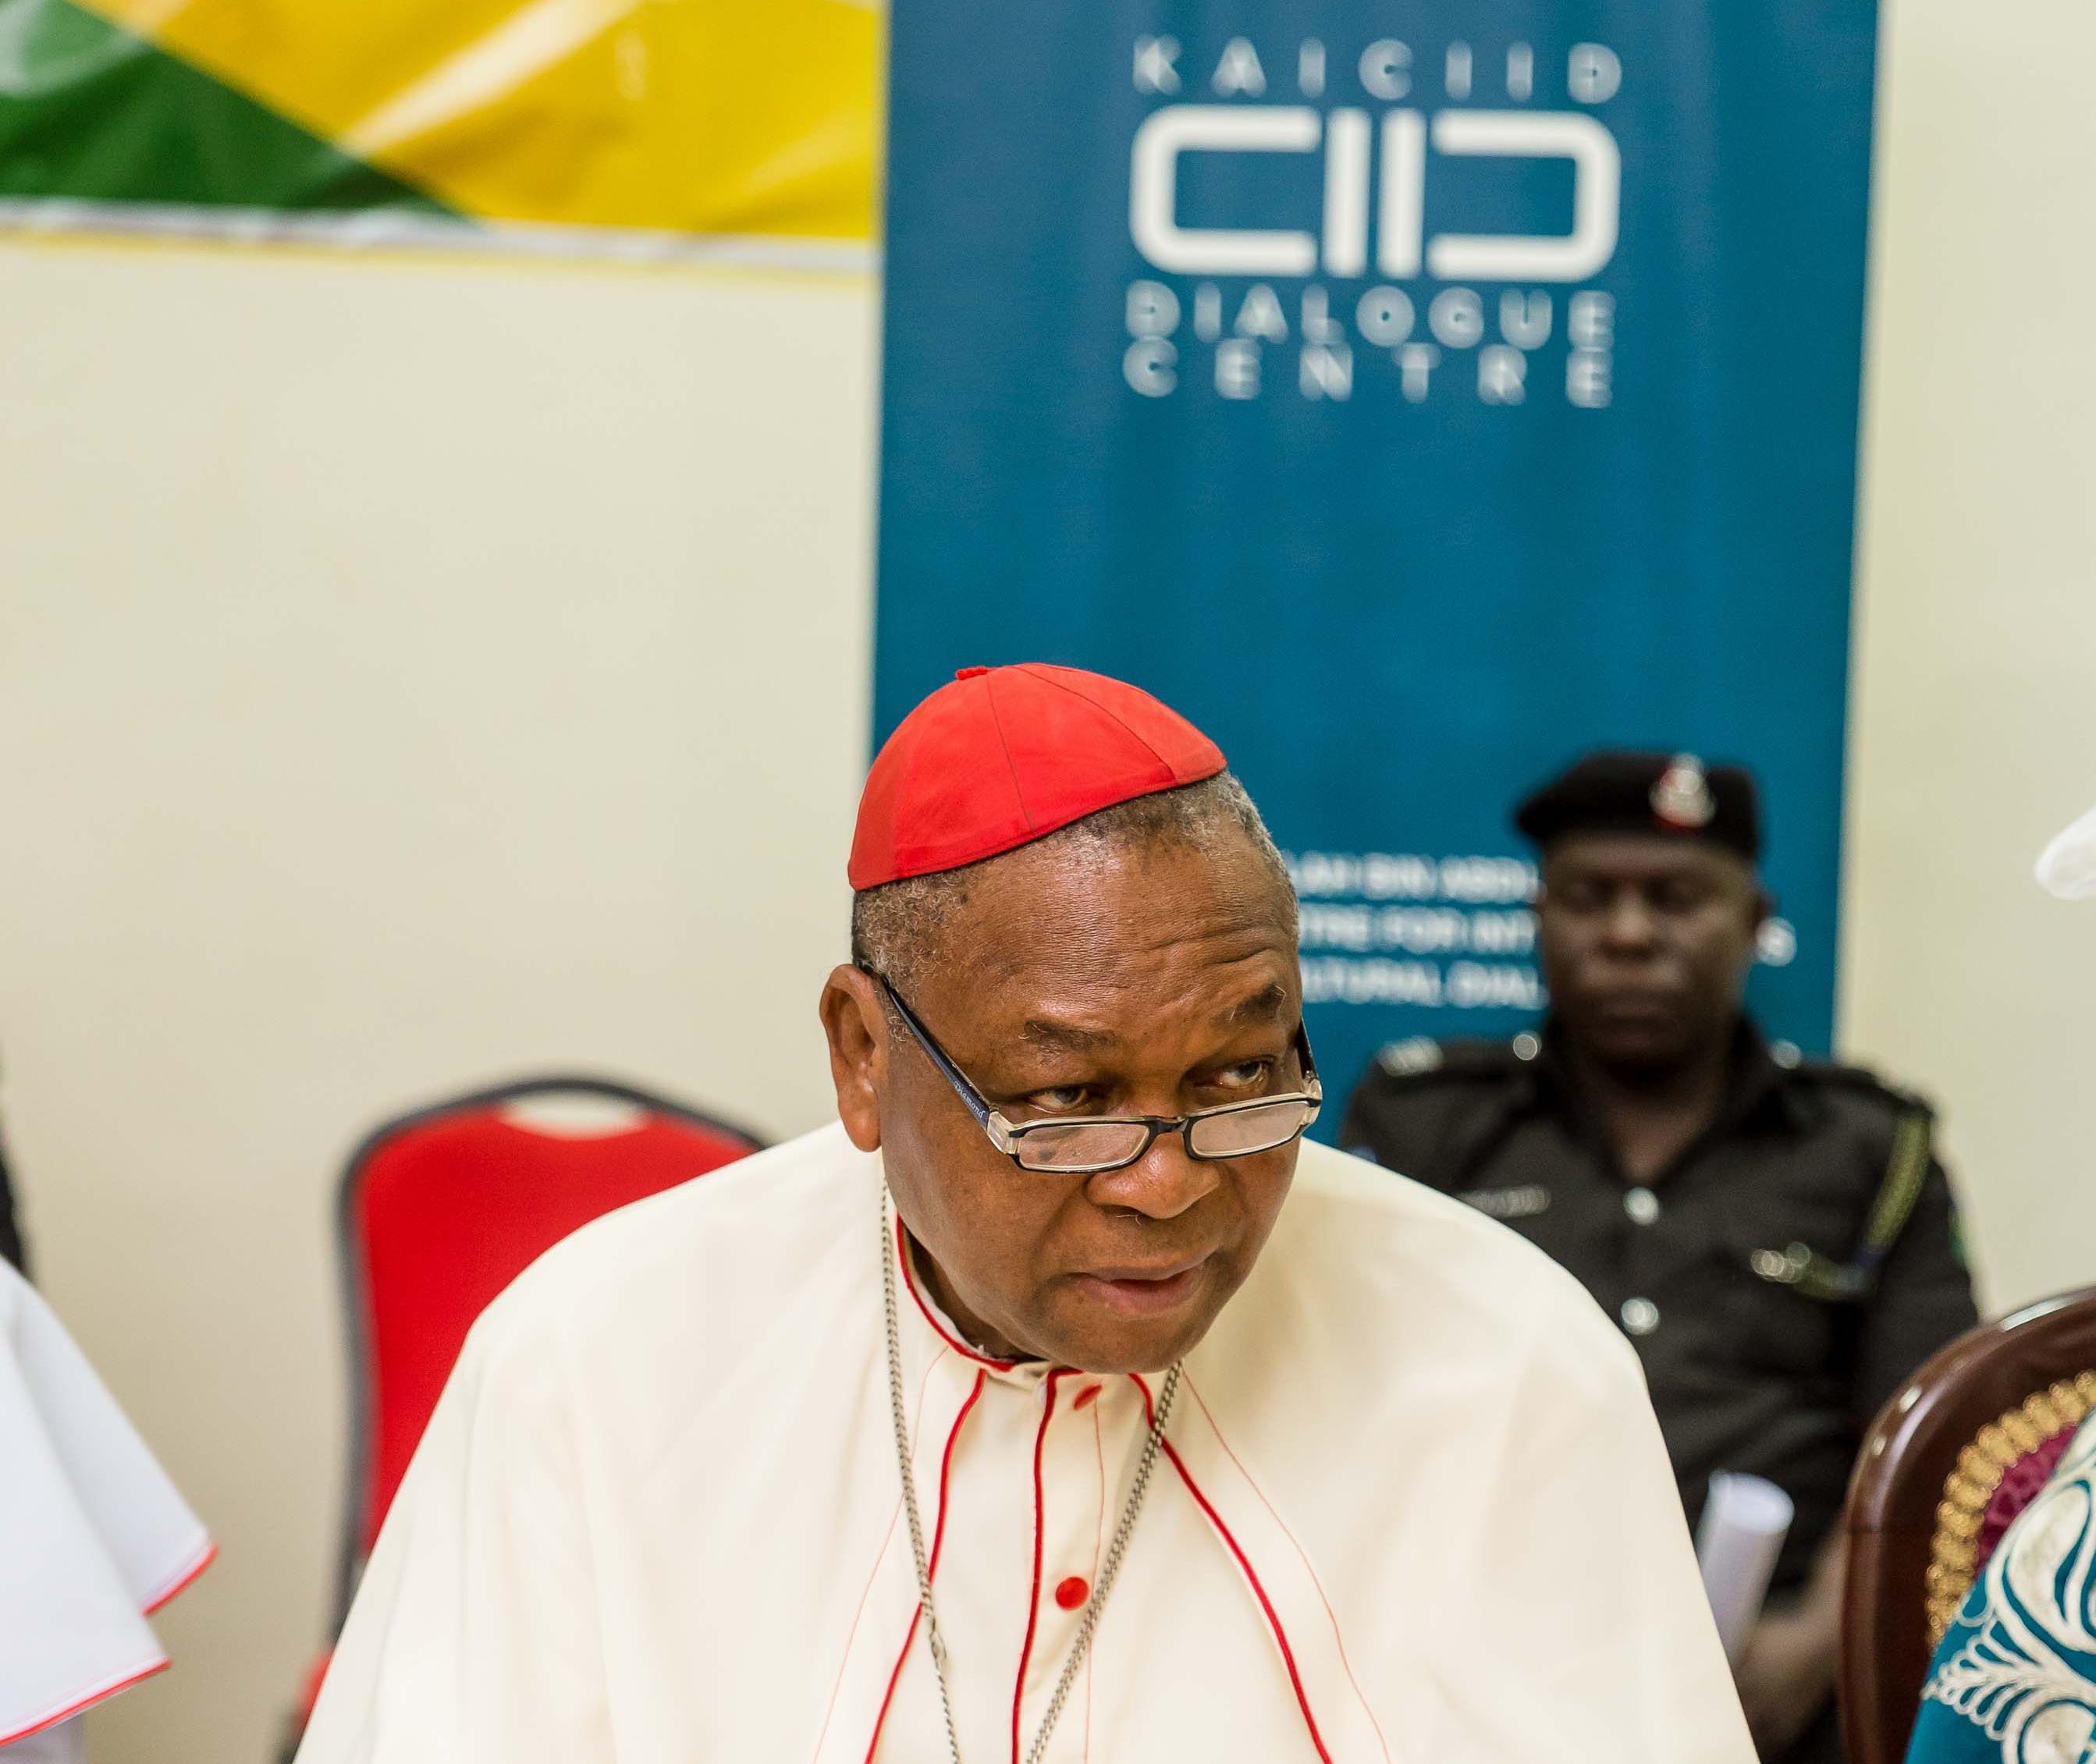 Eine bessere Welt für alle: Kardinal John Onaiyekan über sein Engagement für den Frieden beim Interreligiösen G20-Forum